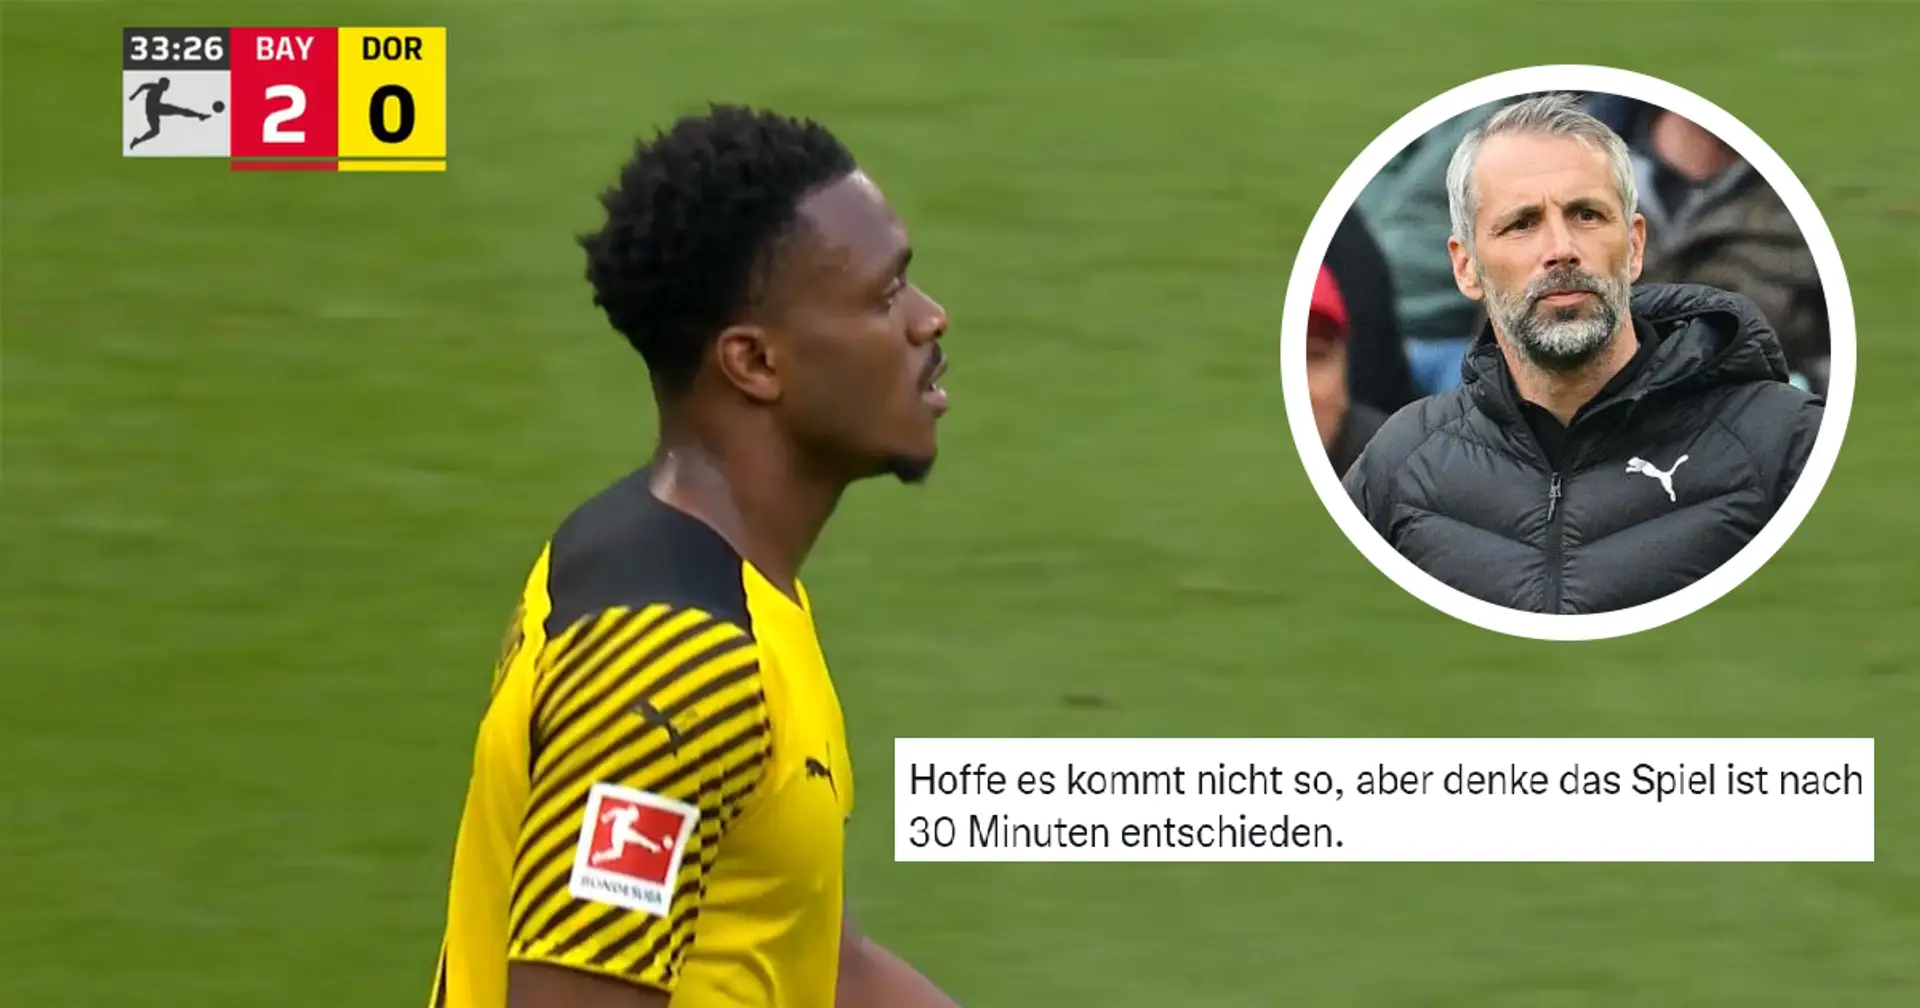 "Zagadou wird mindestens ein Gegentor verursachen": BVB-Fans wussten alles, bevor das Spiel begann